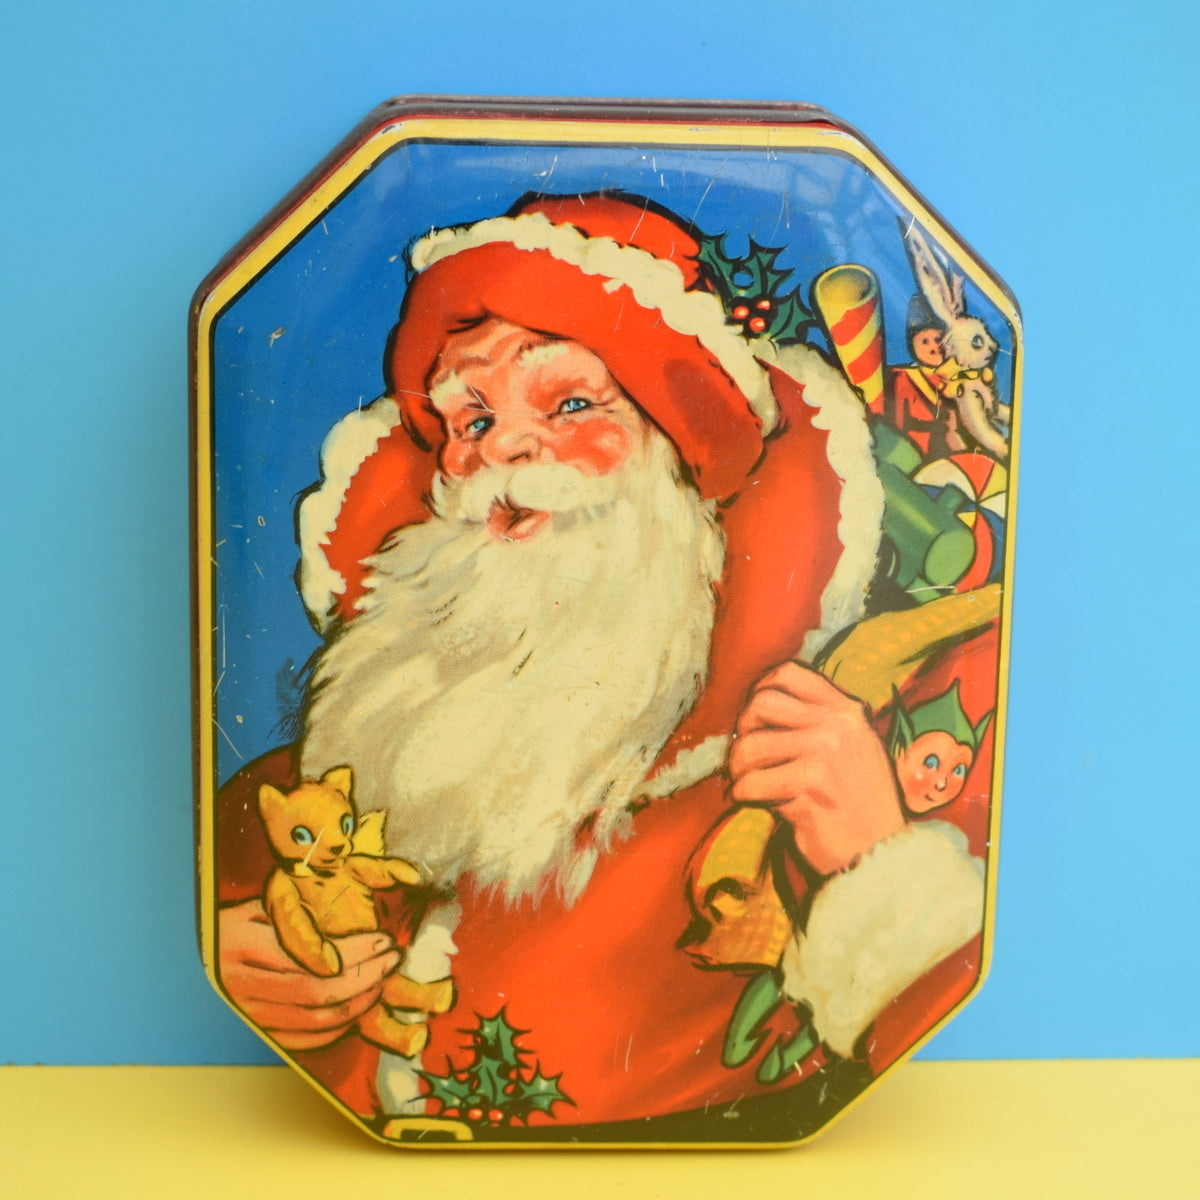 Vintage 1950s Christmas Tin - Santa